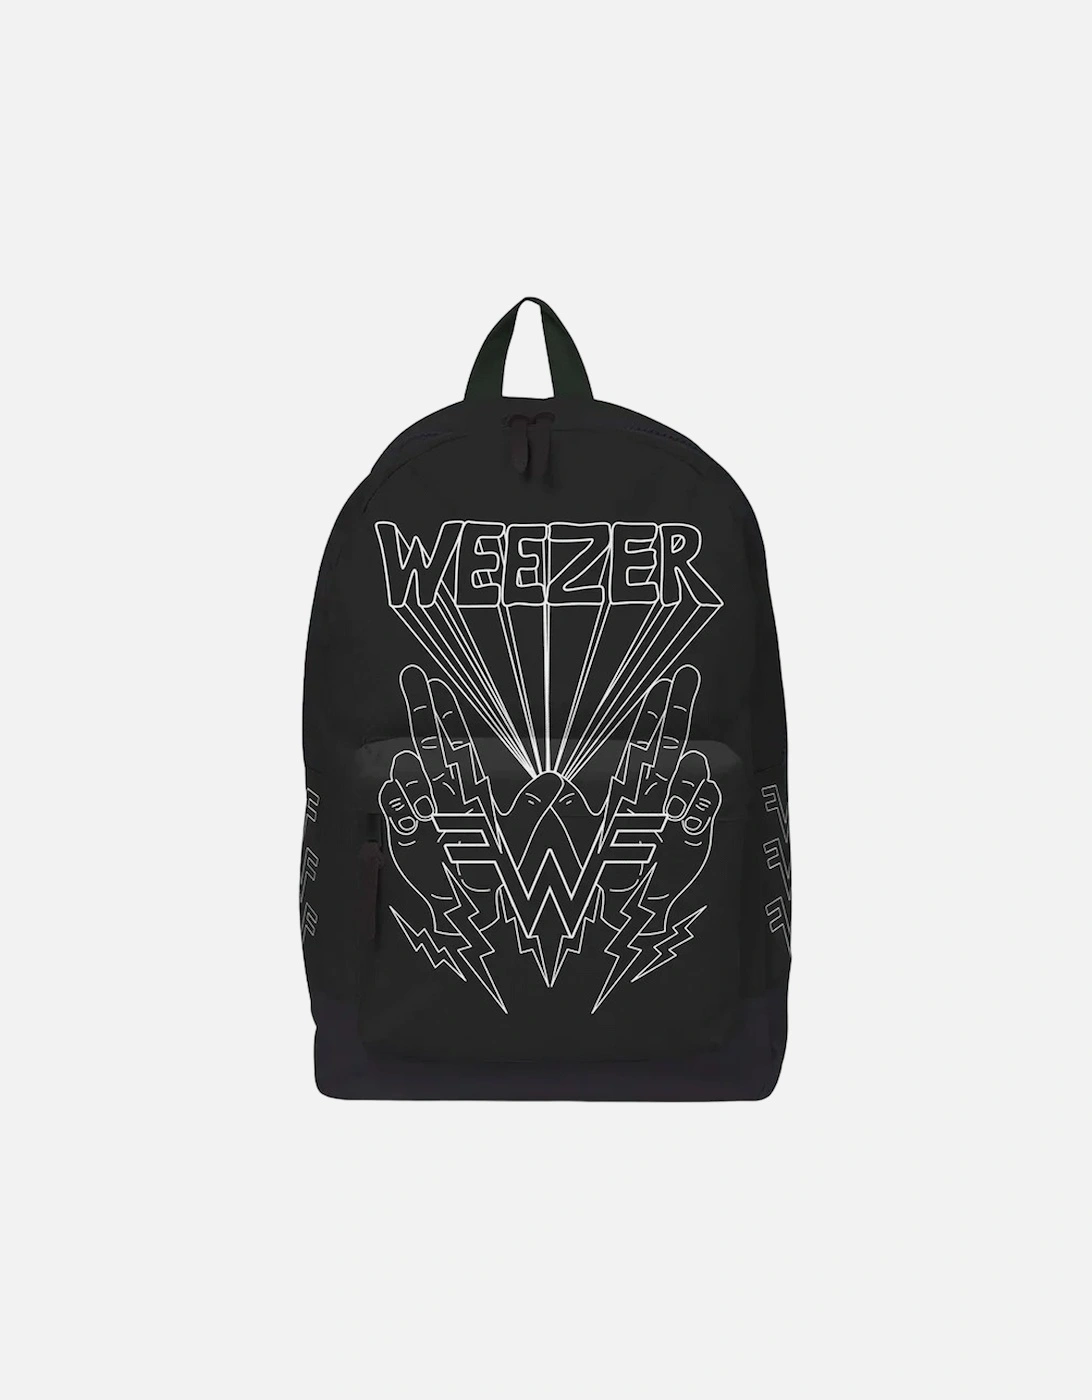 Weezer Backpack, 2 of 1